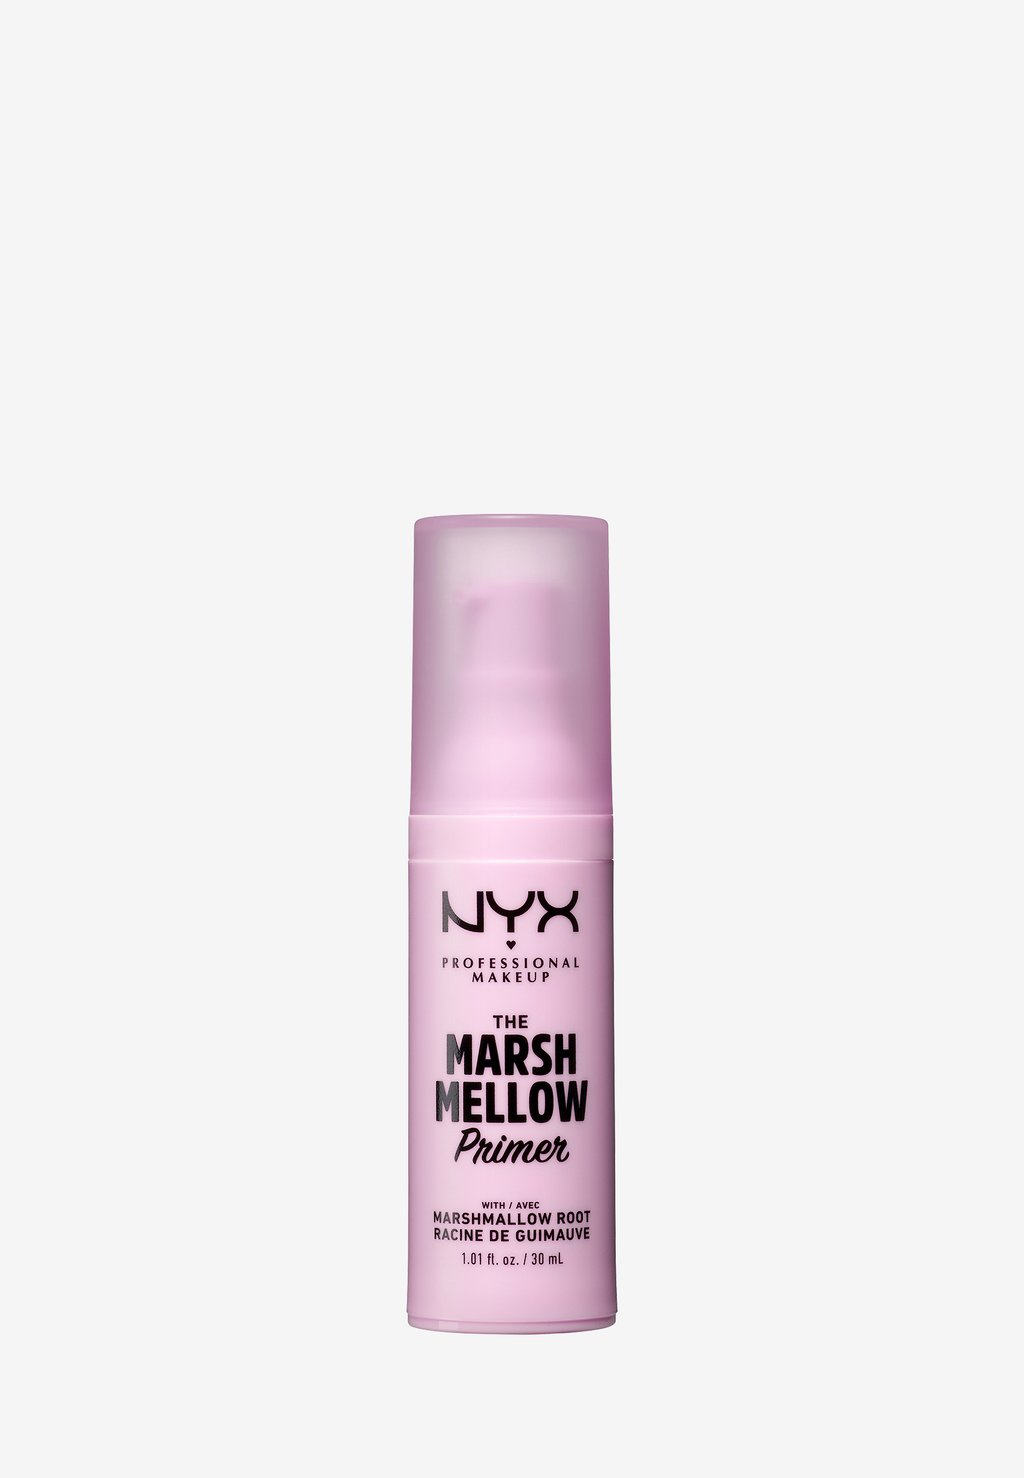 Праймер Marsh Mallow Smooth Primer Nyx Professional Makeup nyx professional makeup праймер для лица the marsh mellow primer 30 мл розовый